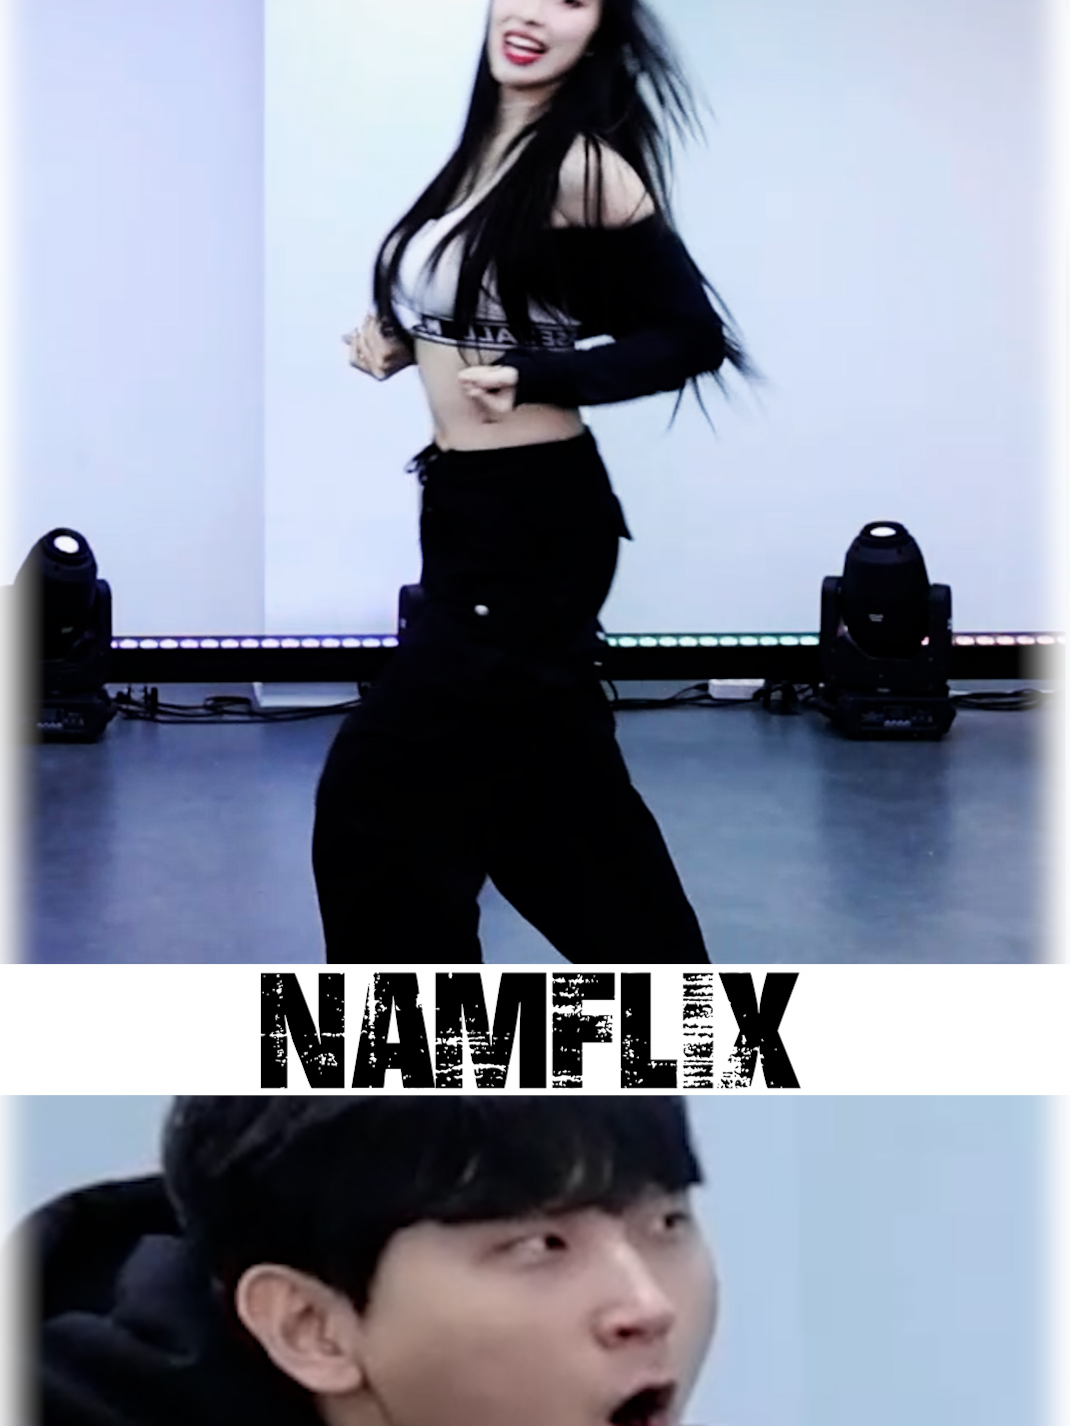 킥드럼베이스 춤을 만든 그녀의 춤 실력 #설하 #Rover #KAI #킥드럼베이스 #kpopdance #dancecover #수니그룹 #추천 #김민교 #반응